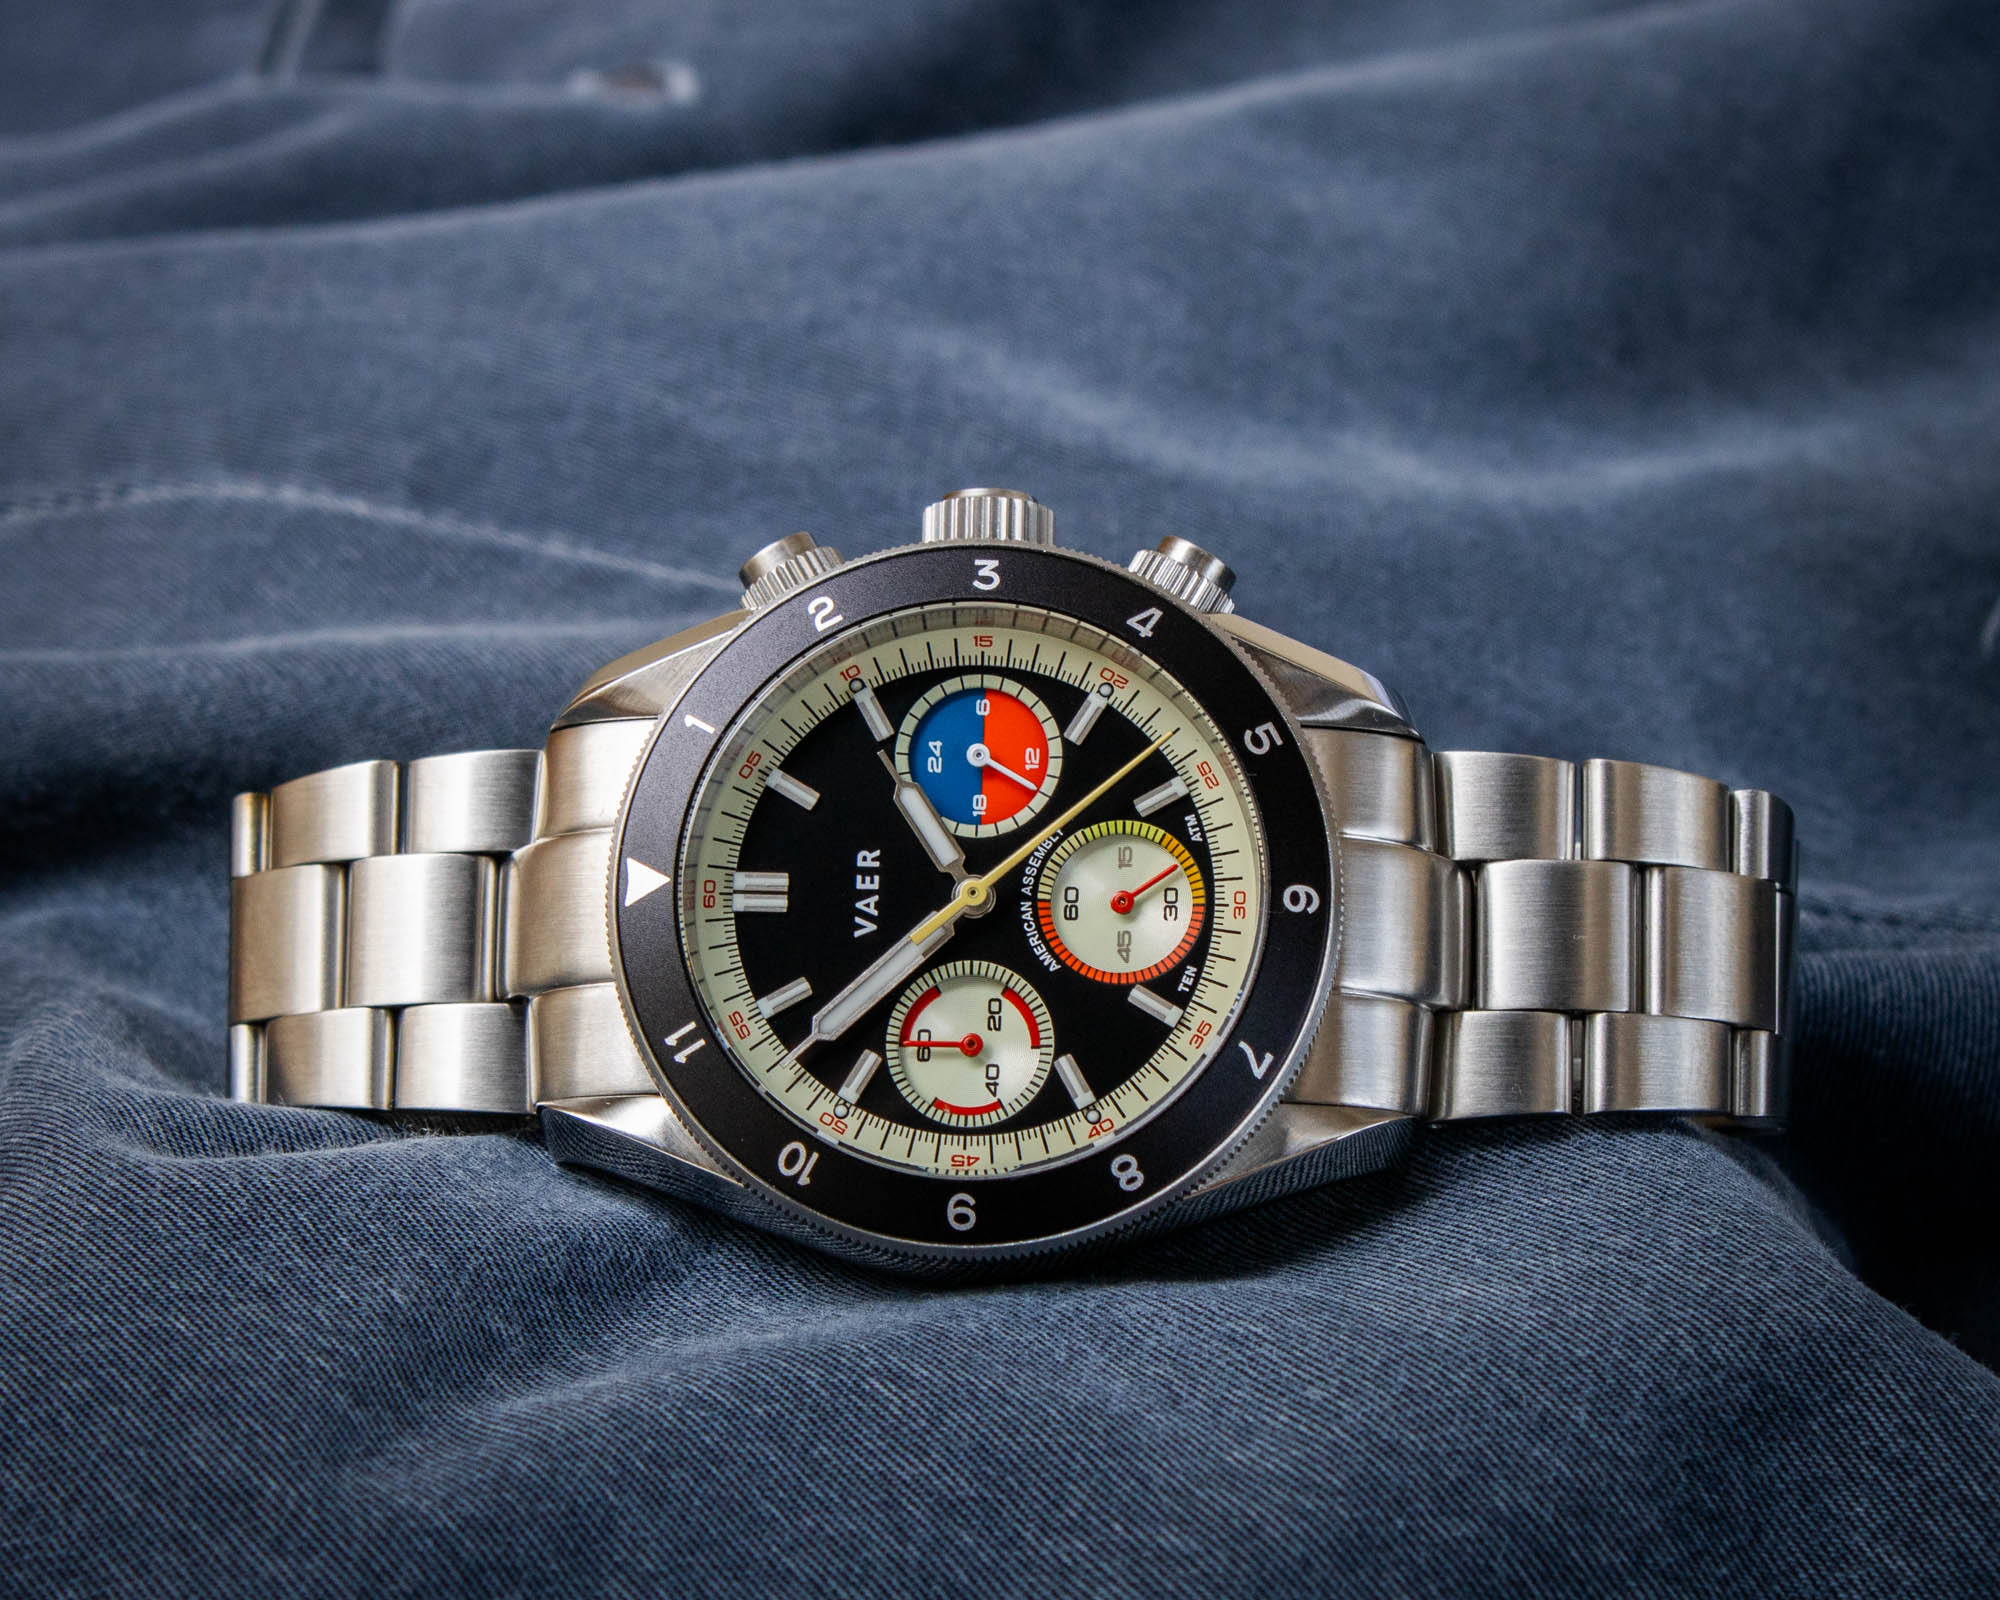 Дебют на руке до 500$: Часы с хронографом Vaer R1 Ocean Racer